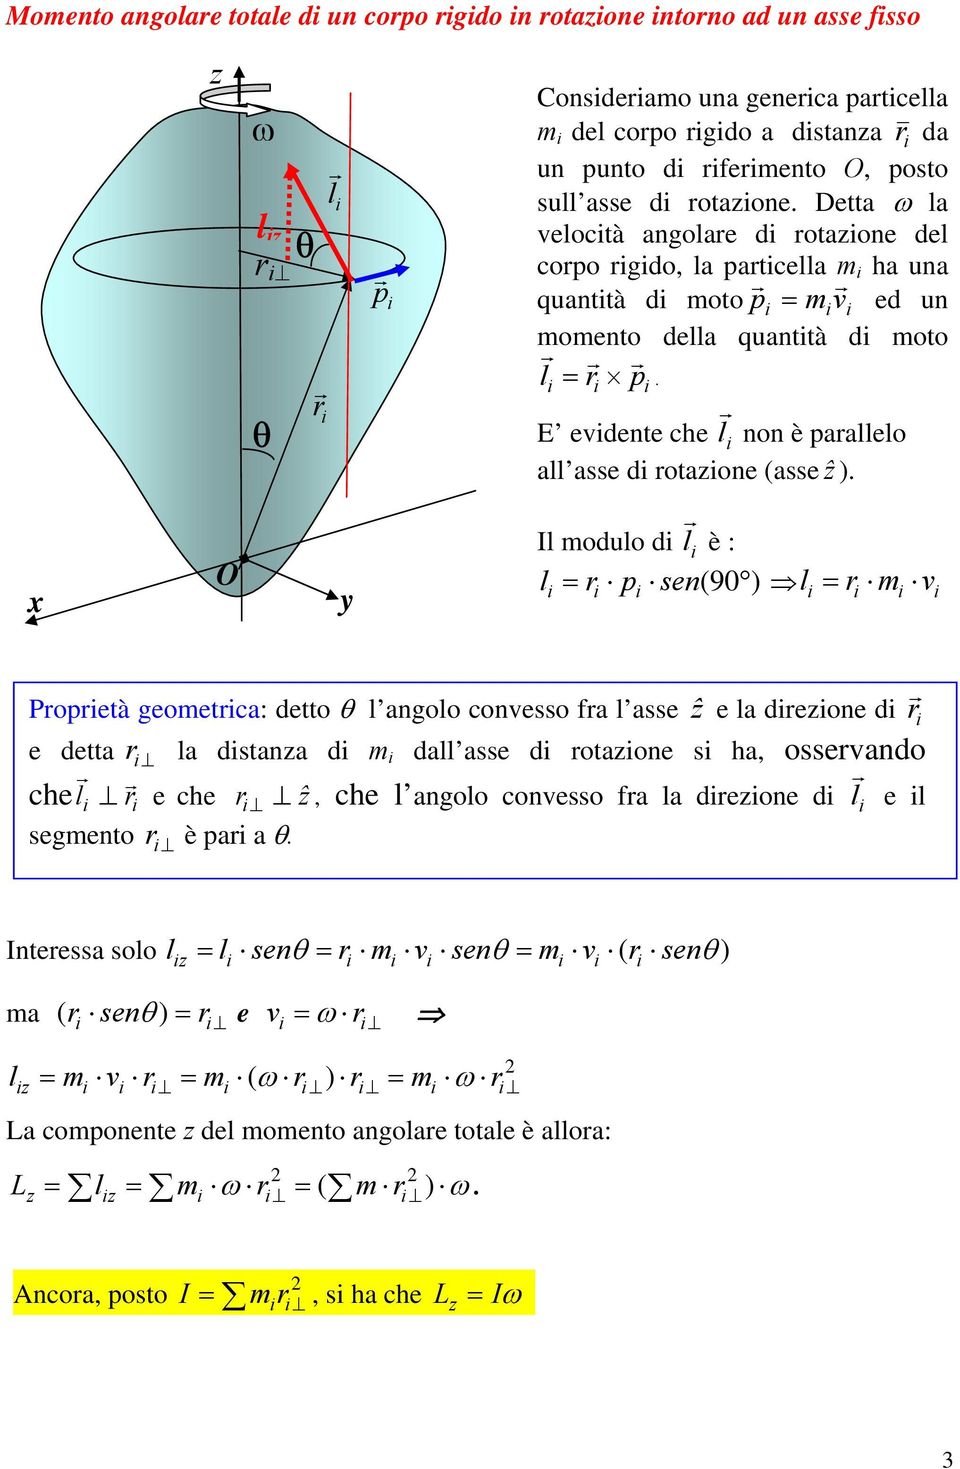 x y Il modulo d l è : l = p sen( 90 ) = m v l Popetà geometca: detto θ l angolo convesso fa l asse ẑ e la dezone d e detta chel e che ẑ segmento è pa a θ.